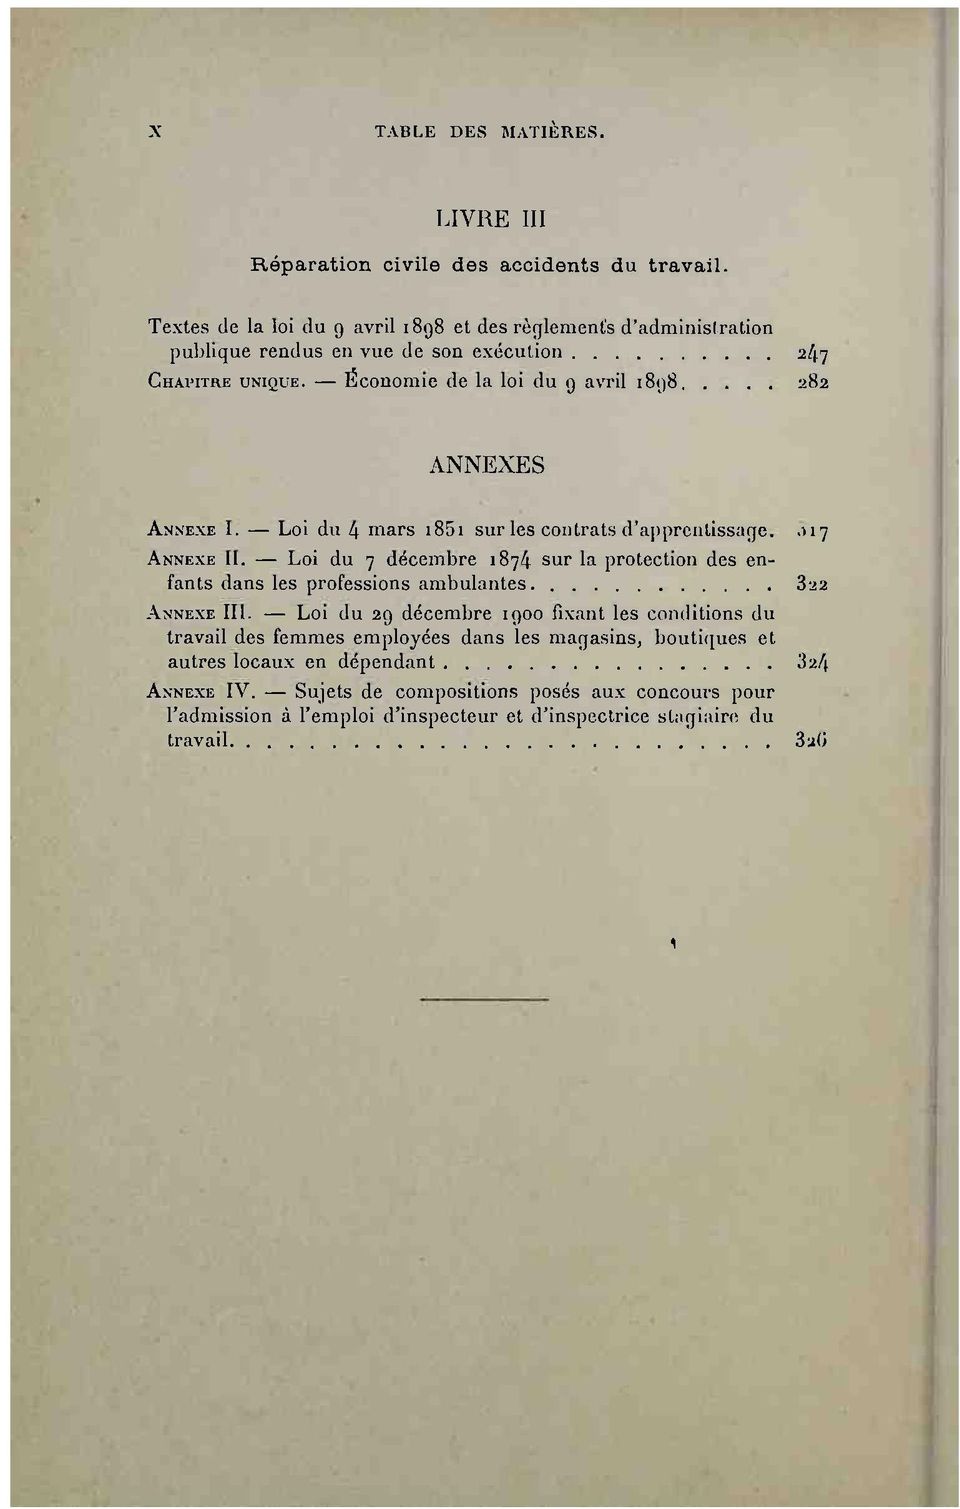 Économie de la loi du g avril i8g8 282 A N N E X E S ANNEXE I. Loi du 4 mars 1851 sur les contrats d'apprentissage, 17 ANNEXE 11.